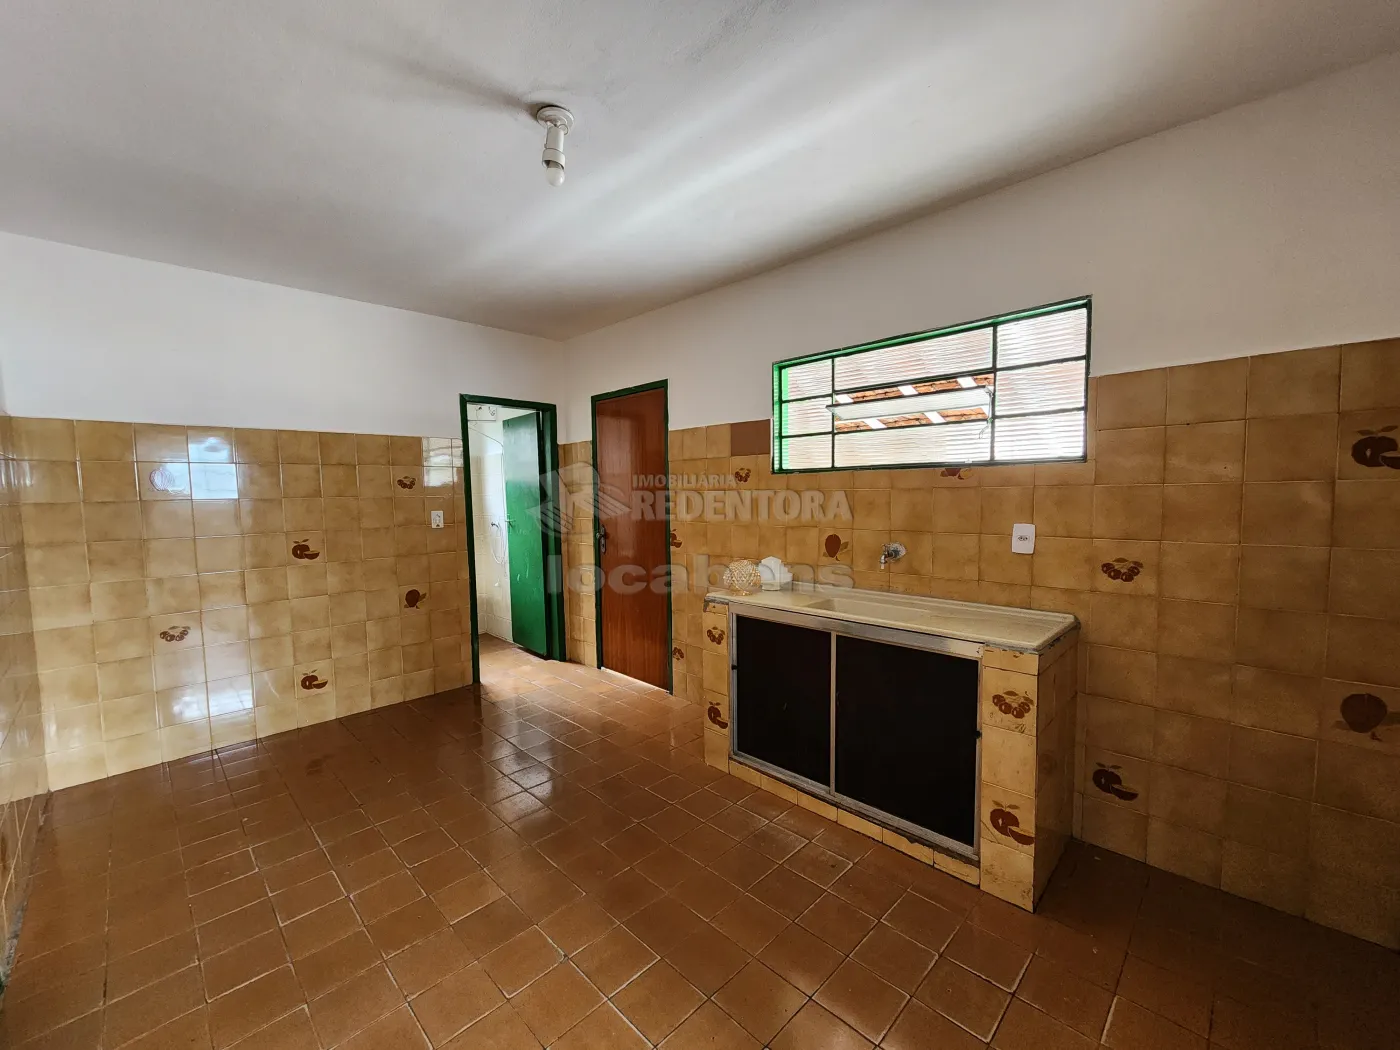 Alugar Casa / Padrão em São José do Rio Preto apenas R$ 1.300,00 - Foto 12